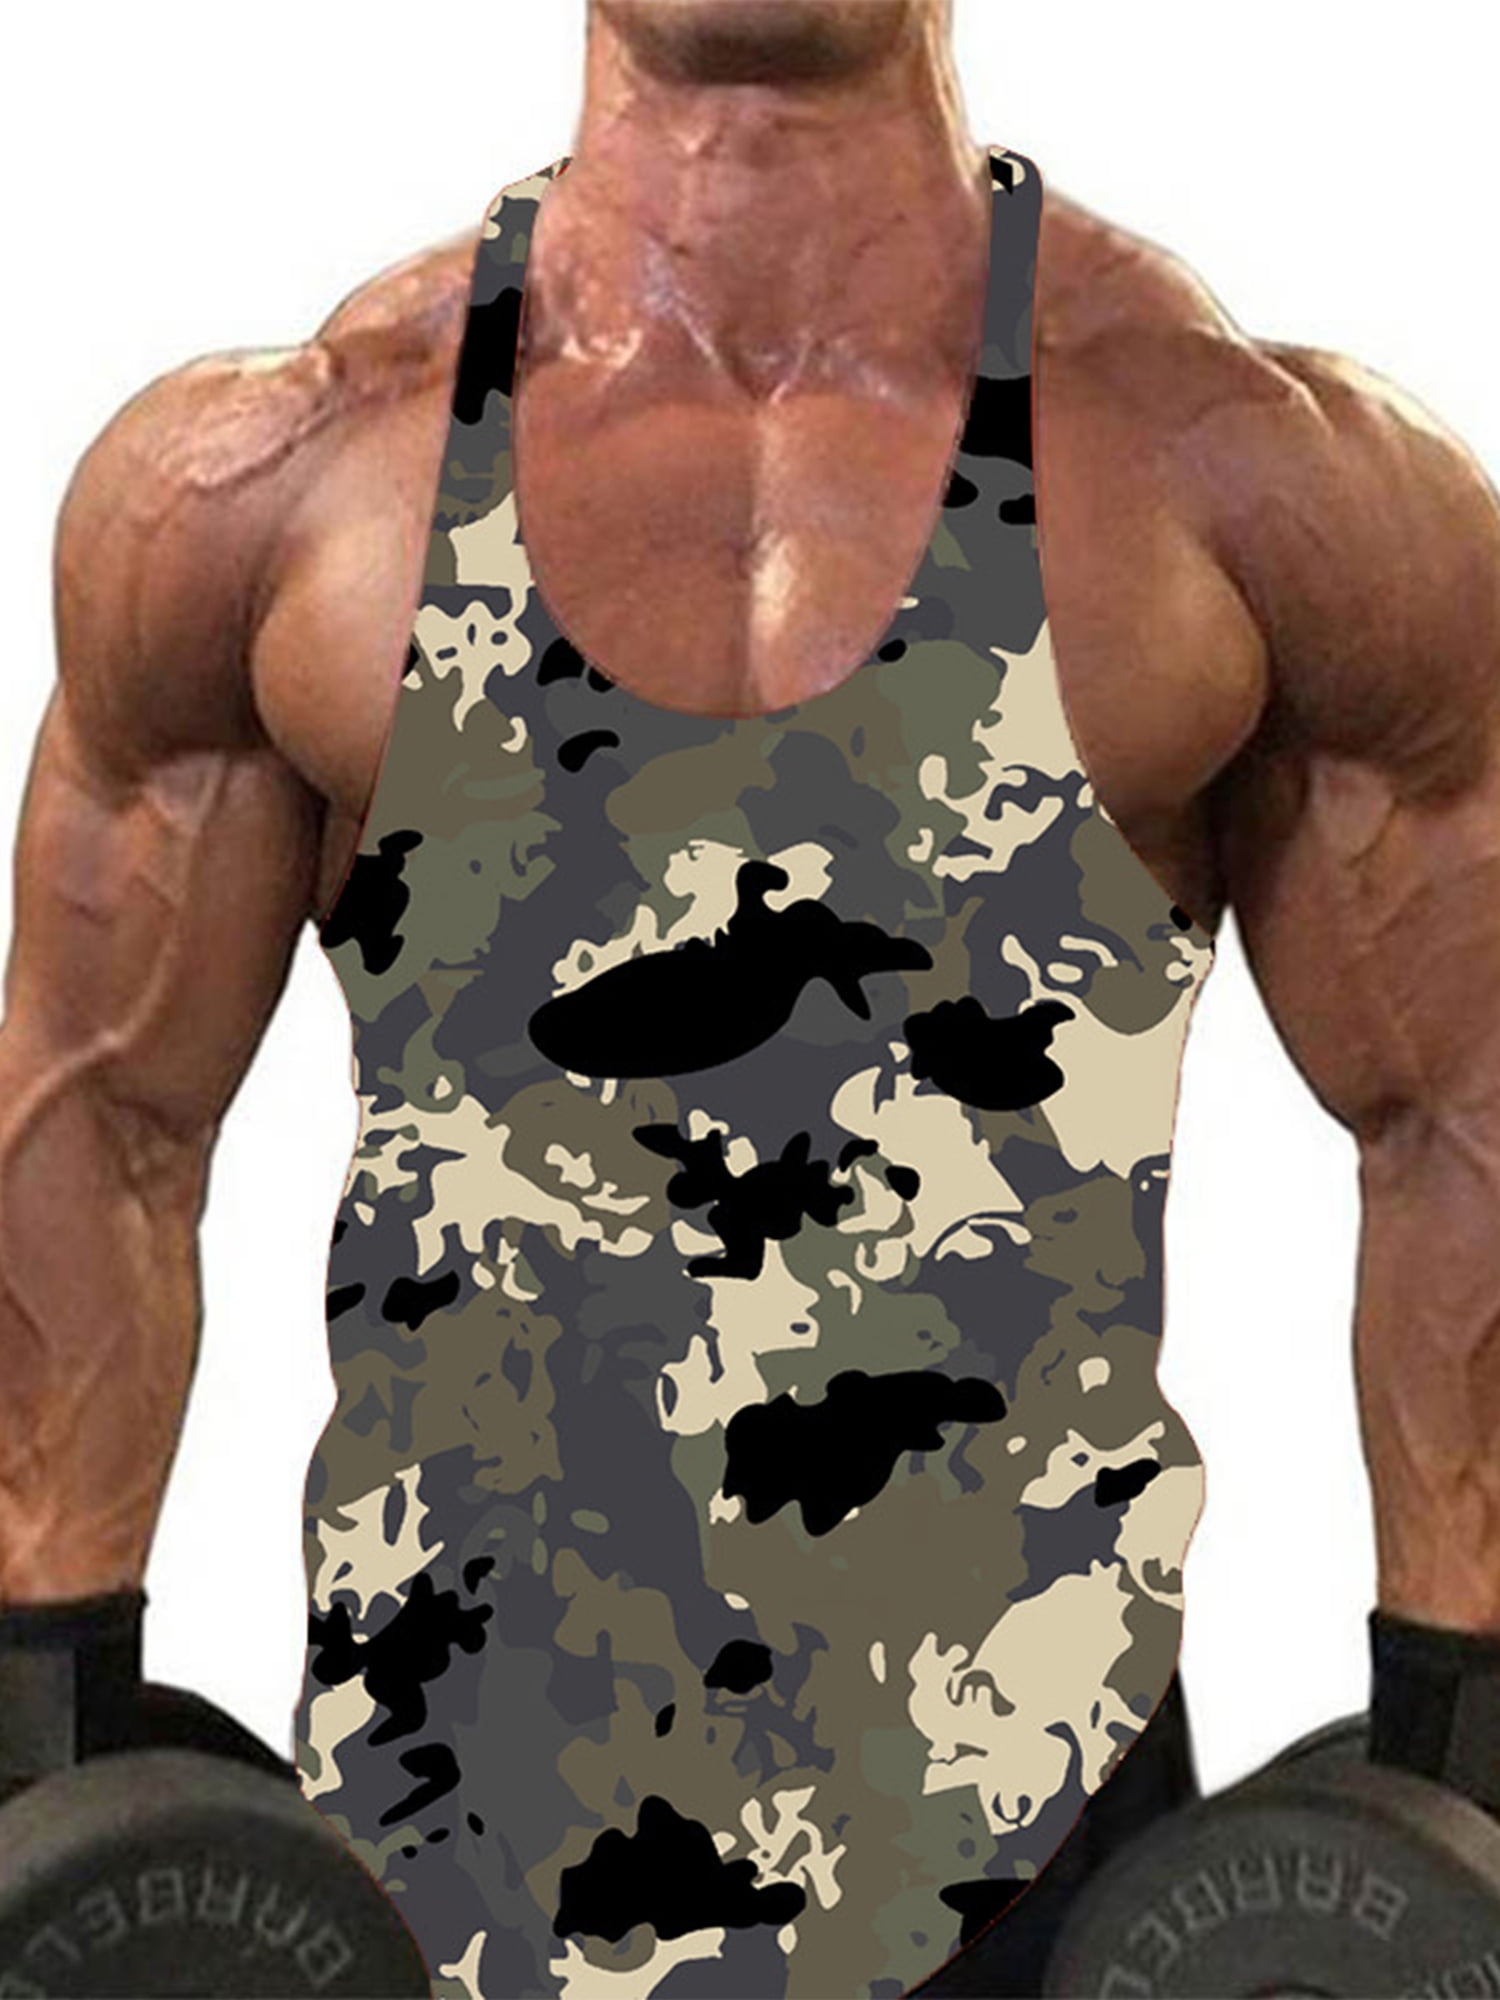 Woobling Men Muscle Shirts Crew Neck Tank Tops Regular Fit Summer Mens ...